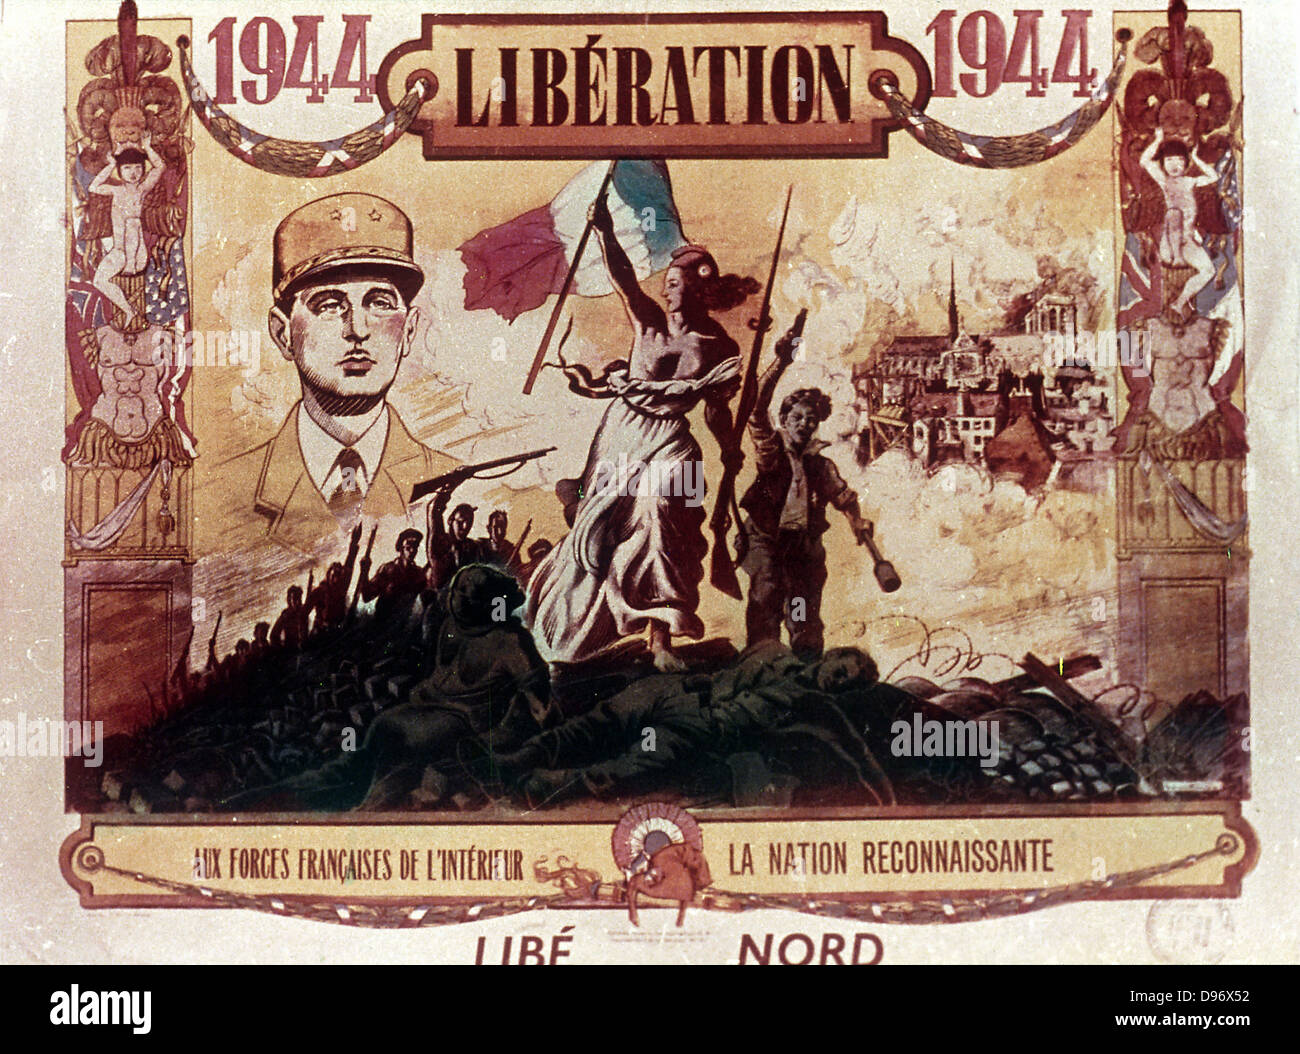 Charles de Gaulle (1890-1970) Général français et premier président de la Cinquième République. Affiche commémorative célébrant la libération de la France en 1944. Banque D'Images